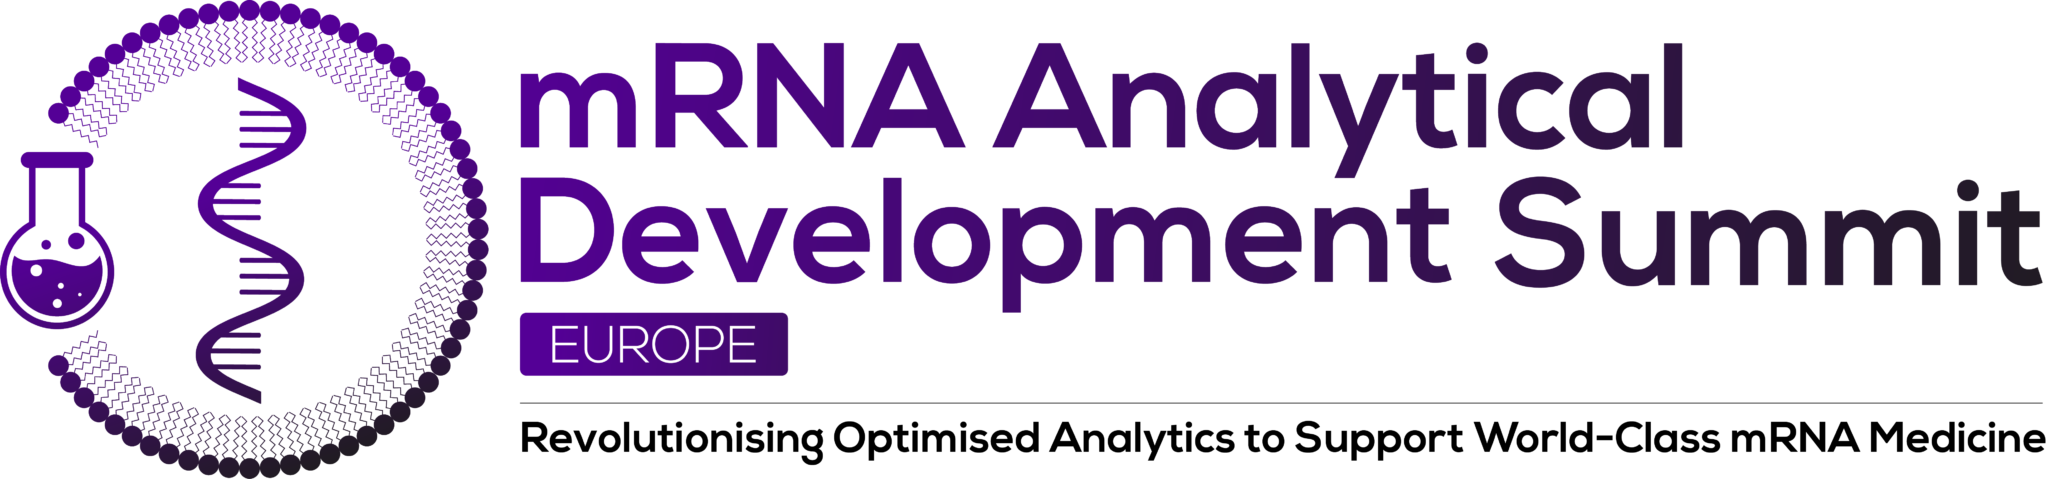 KNAUER at mRNA Analytical Development Summit 